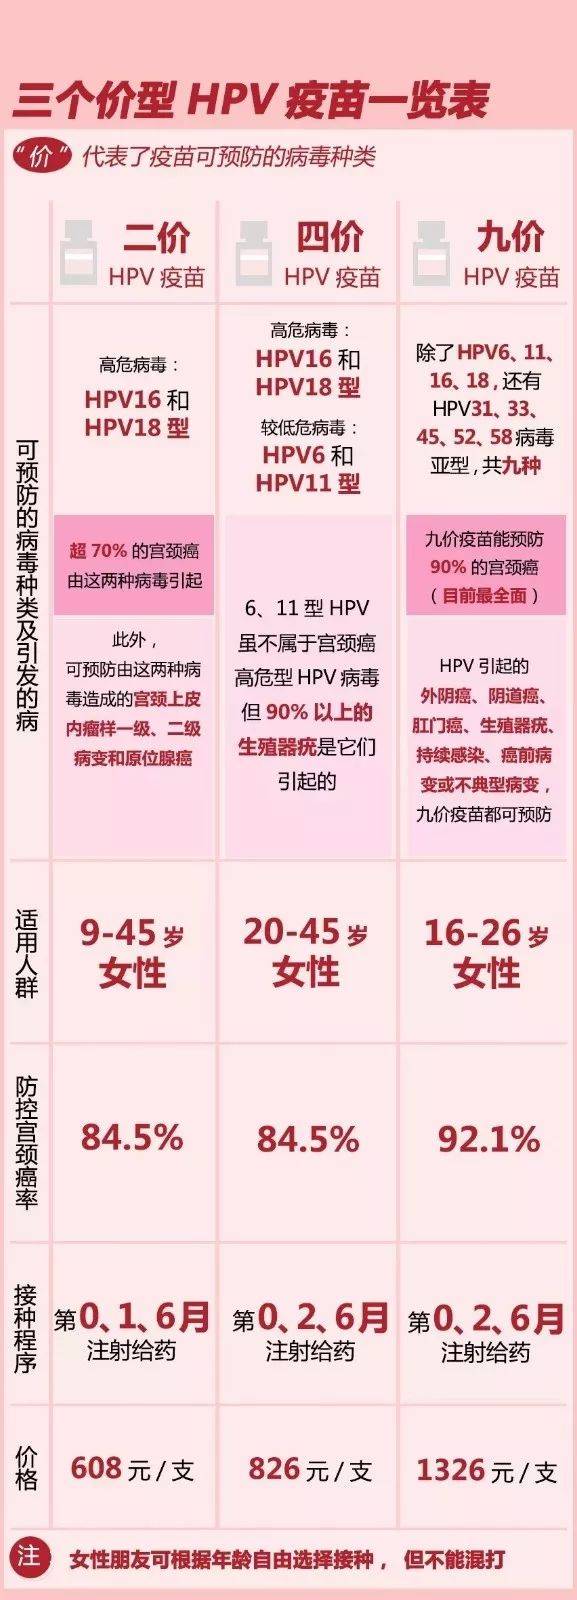 【好消息】德清县第五批九价hpv疫苗10月11日开始预约!